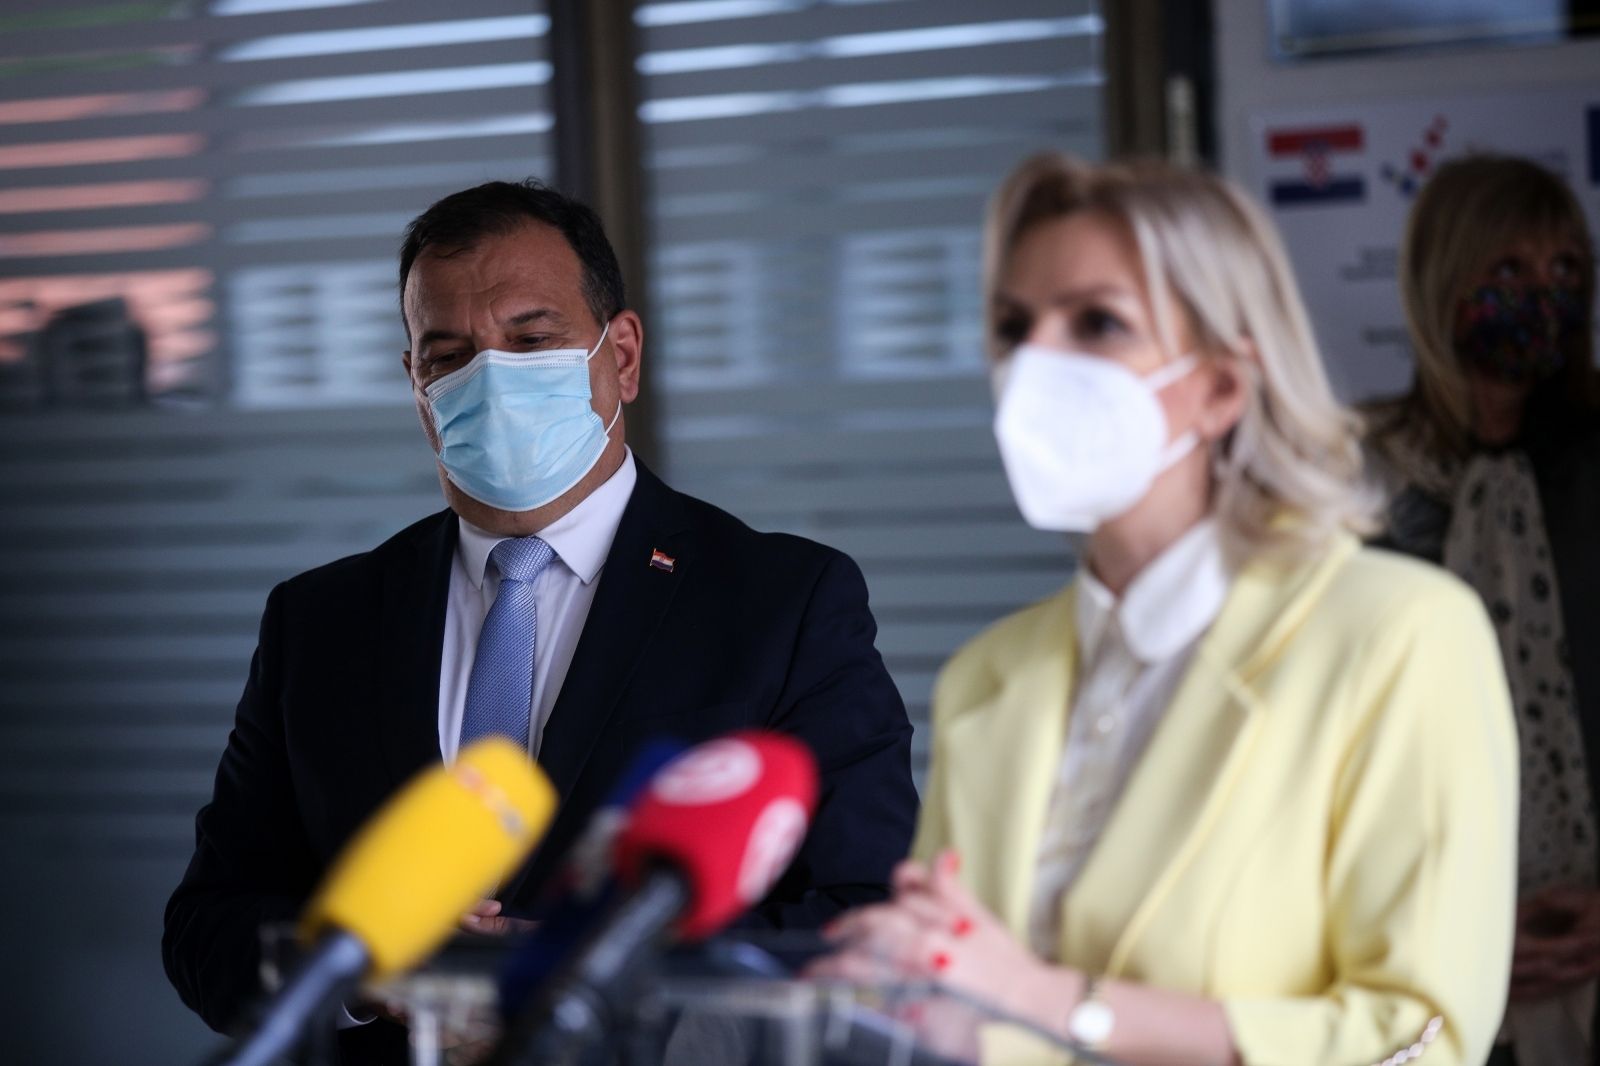 25.05.2021., Zagreb - Ministar zdravstva RH Vili Beros dao je izjavu za medije nakon potpisivanja ugovora o donaciji cjepiva Crnoj Gori i suradnje u transplatacijskom programu. Photo: Zeljko Hladika/PIXSELL